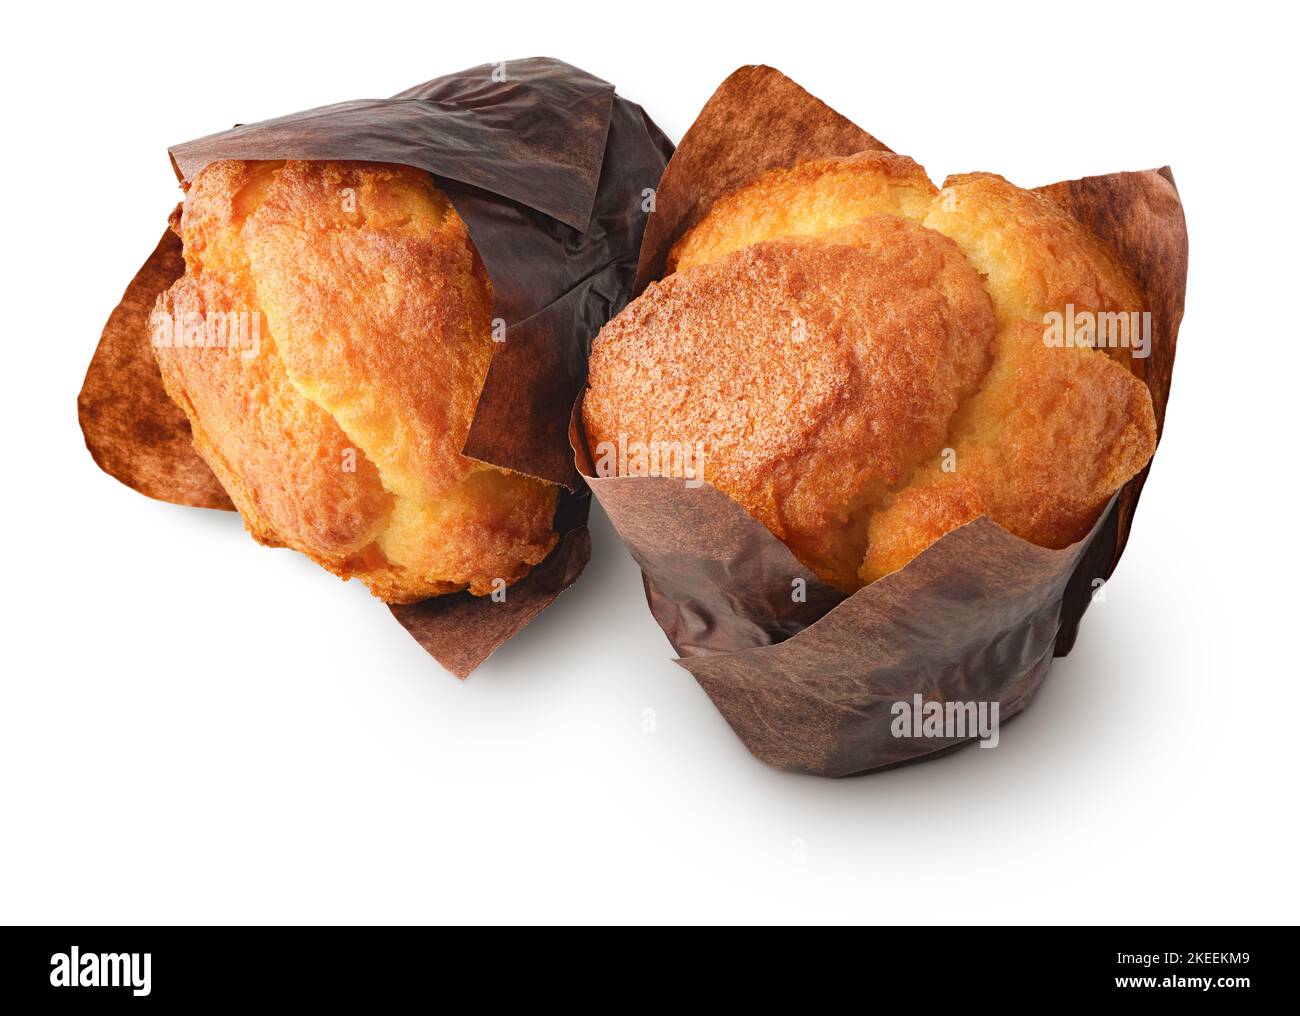 Deux muffins à la vanille, ou petits gâteaux, isolés sur fond blanc Banque D'Images